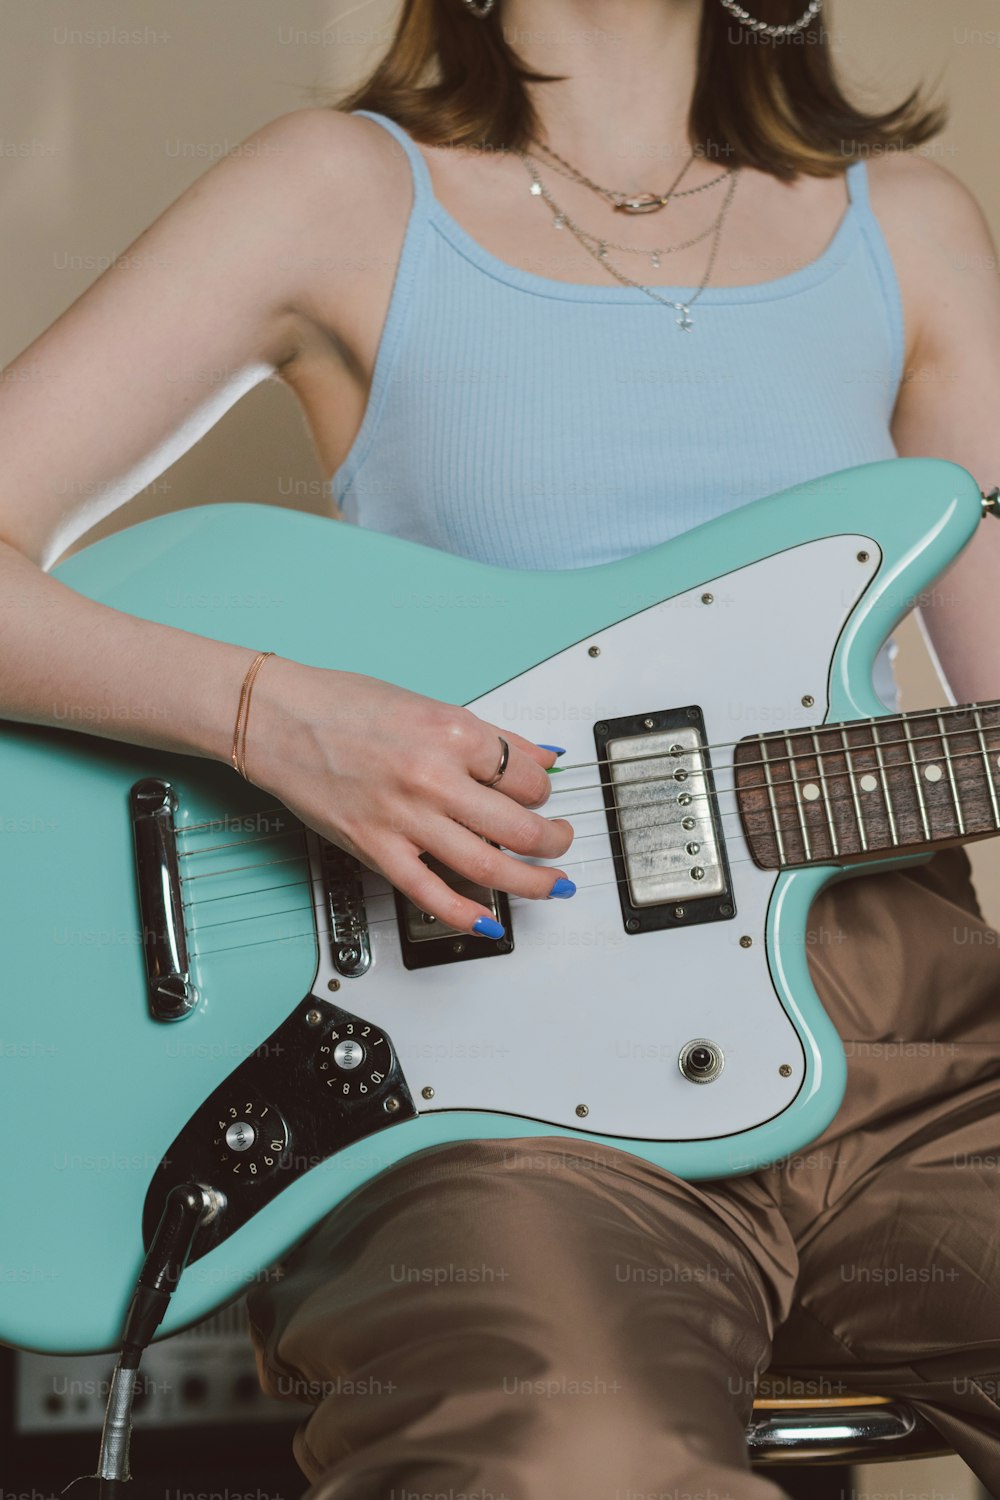 Eine Frau sitzt auf einem Stuhl und hält eine blaue Gitarre in der Hand